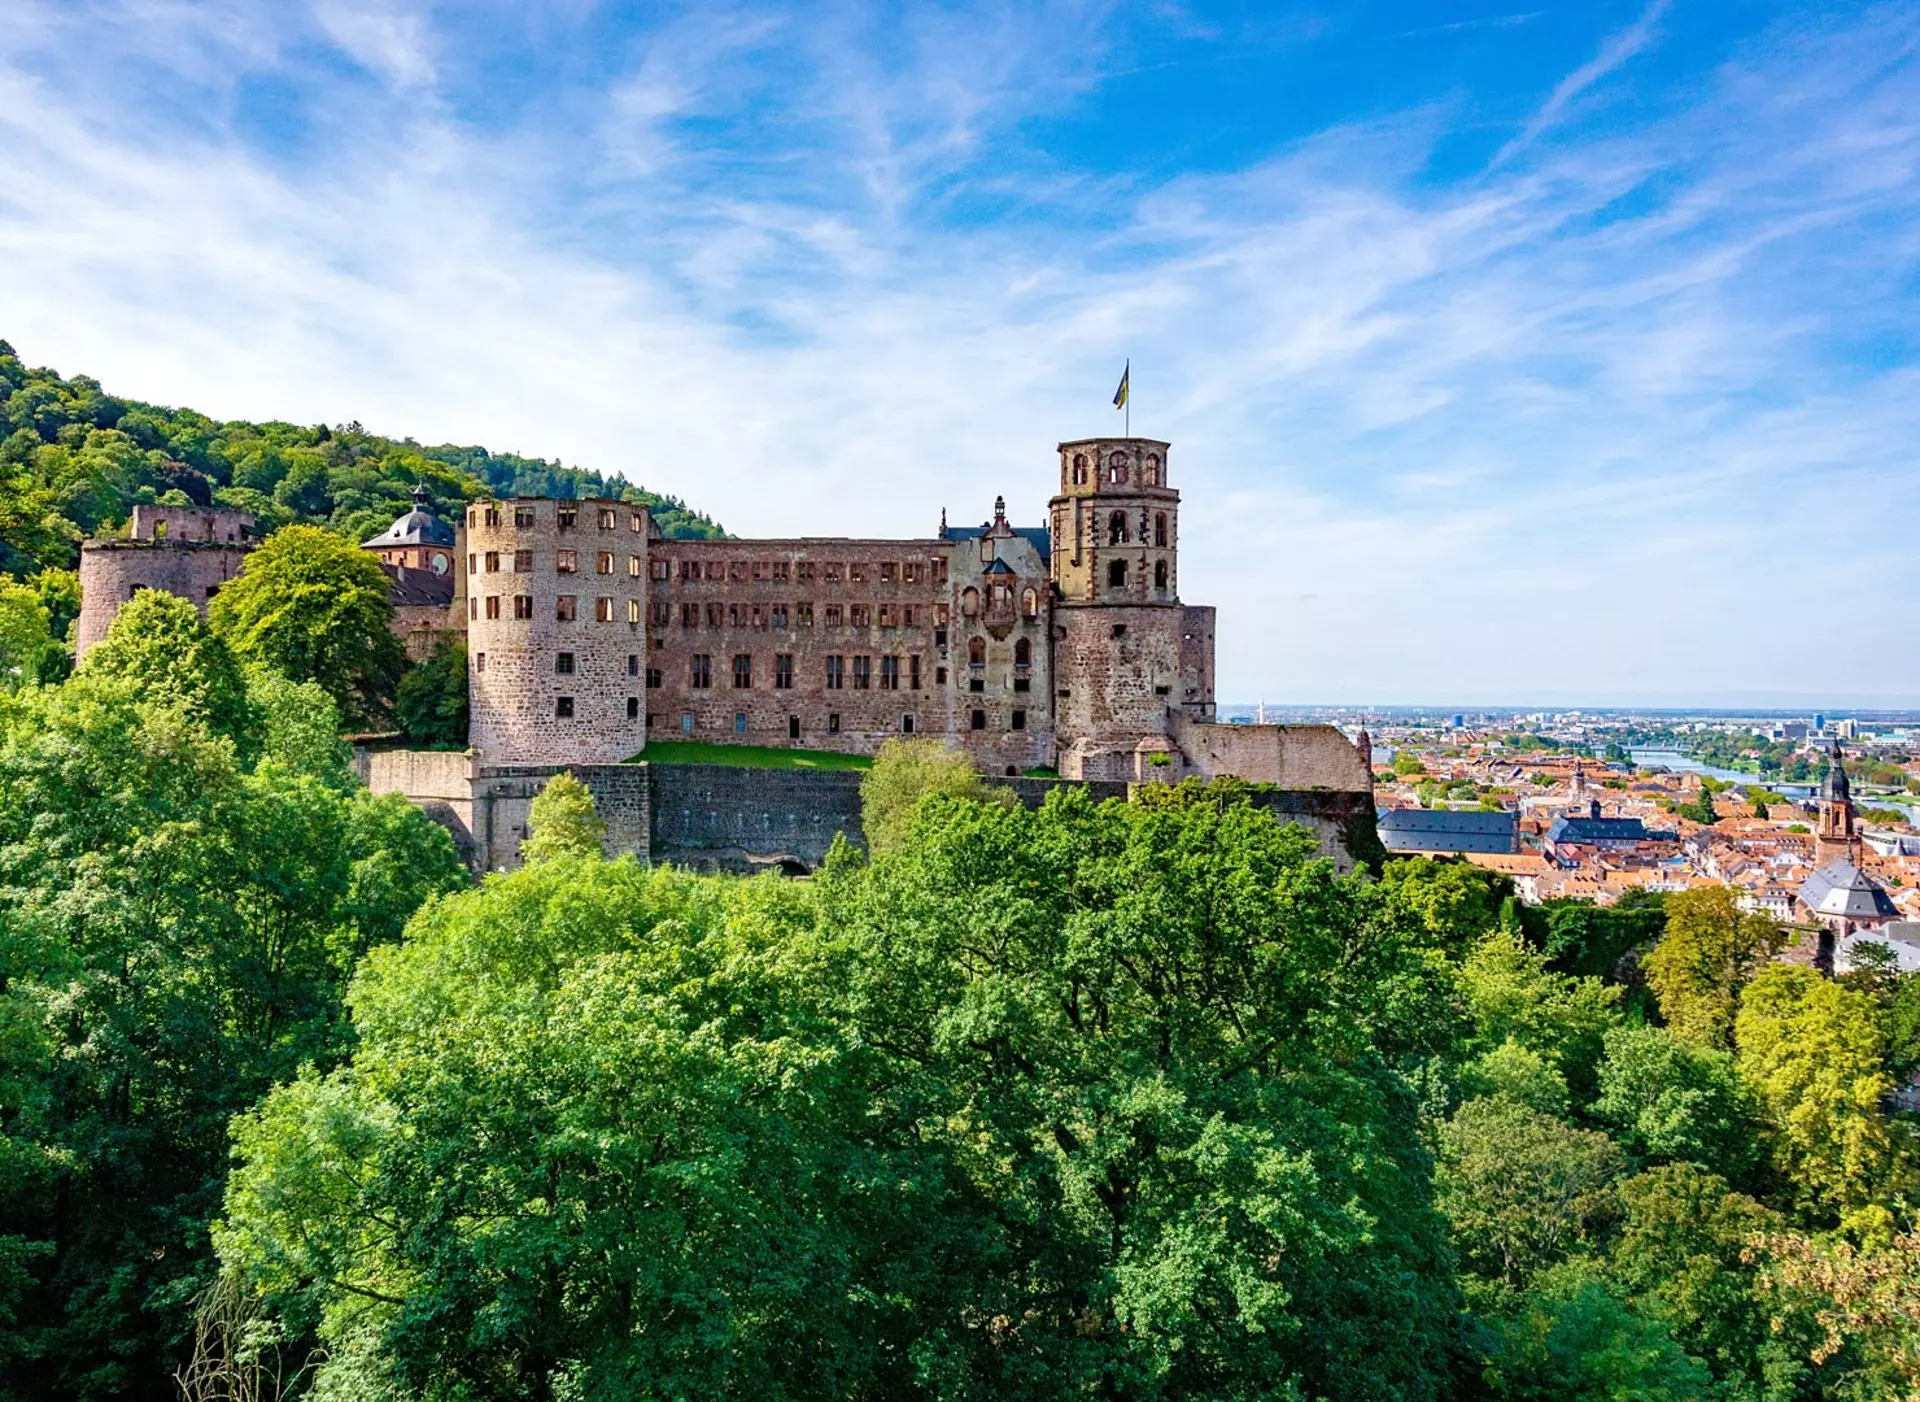 im Urlaub im Odenwald das Schloss in Heidelberg besuchen, die berühmteste Ruine Deutschlands